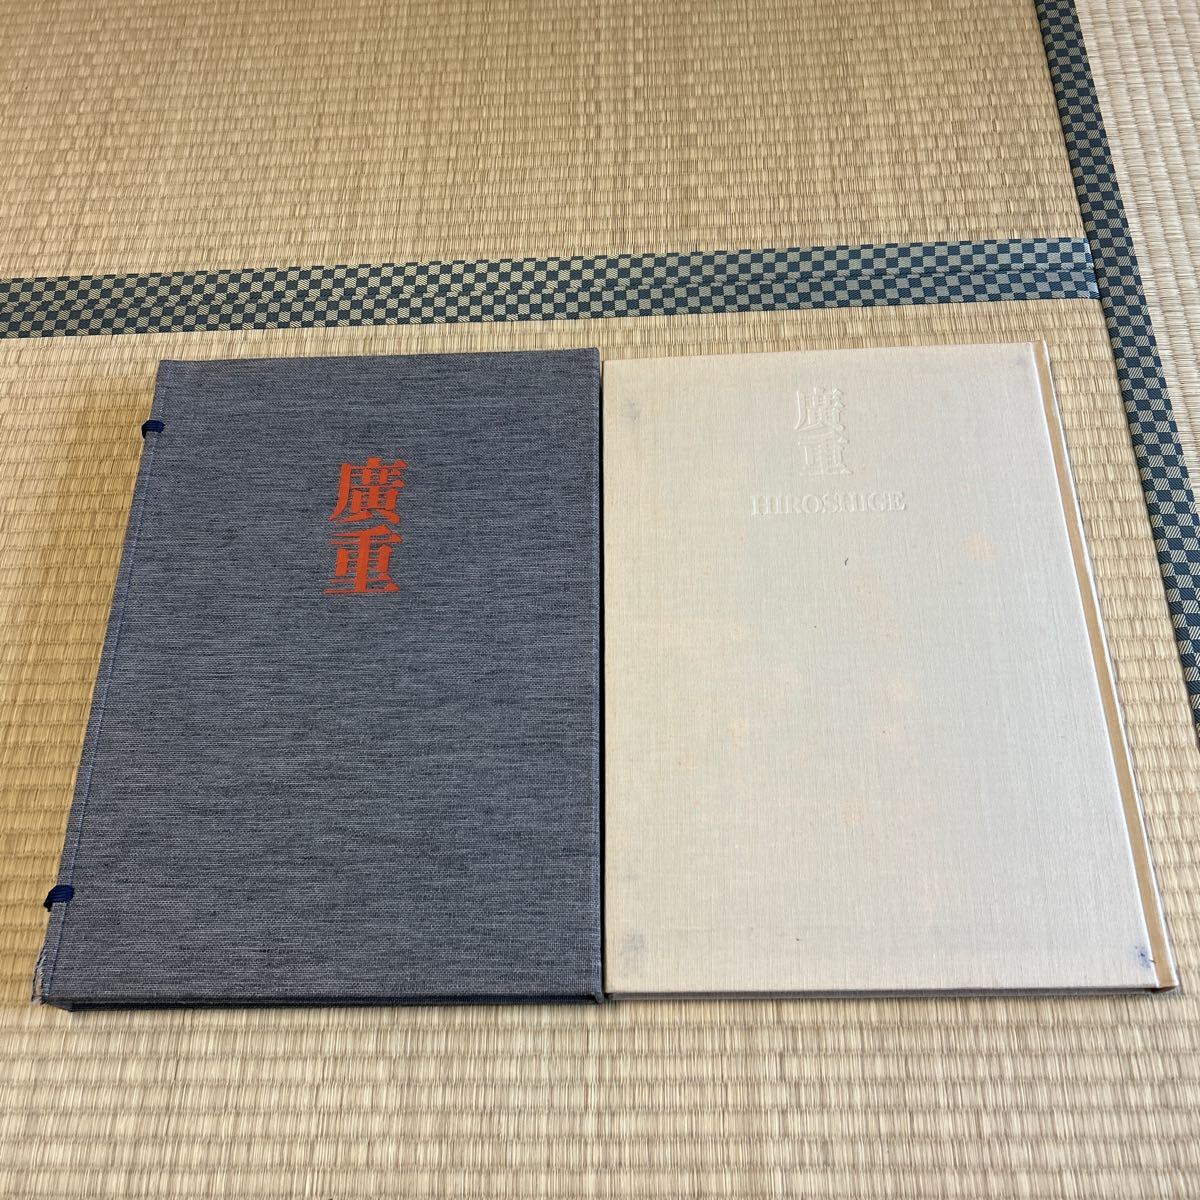 مجموعة كاملة من مطبوعات Ukiyo-e 6 هيروشيغي أوتاغاوا هيروشيغي شويشا 1975 تم تحريره بواسطة شيجيكي غوتو, تلوين, كتاب فن, مجموعة, فهرس